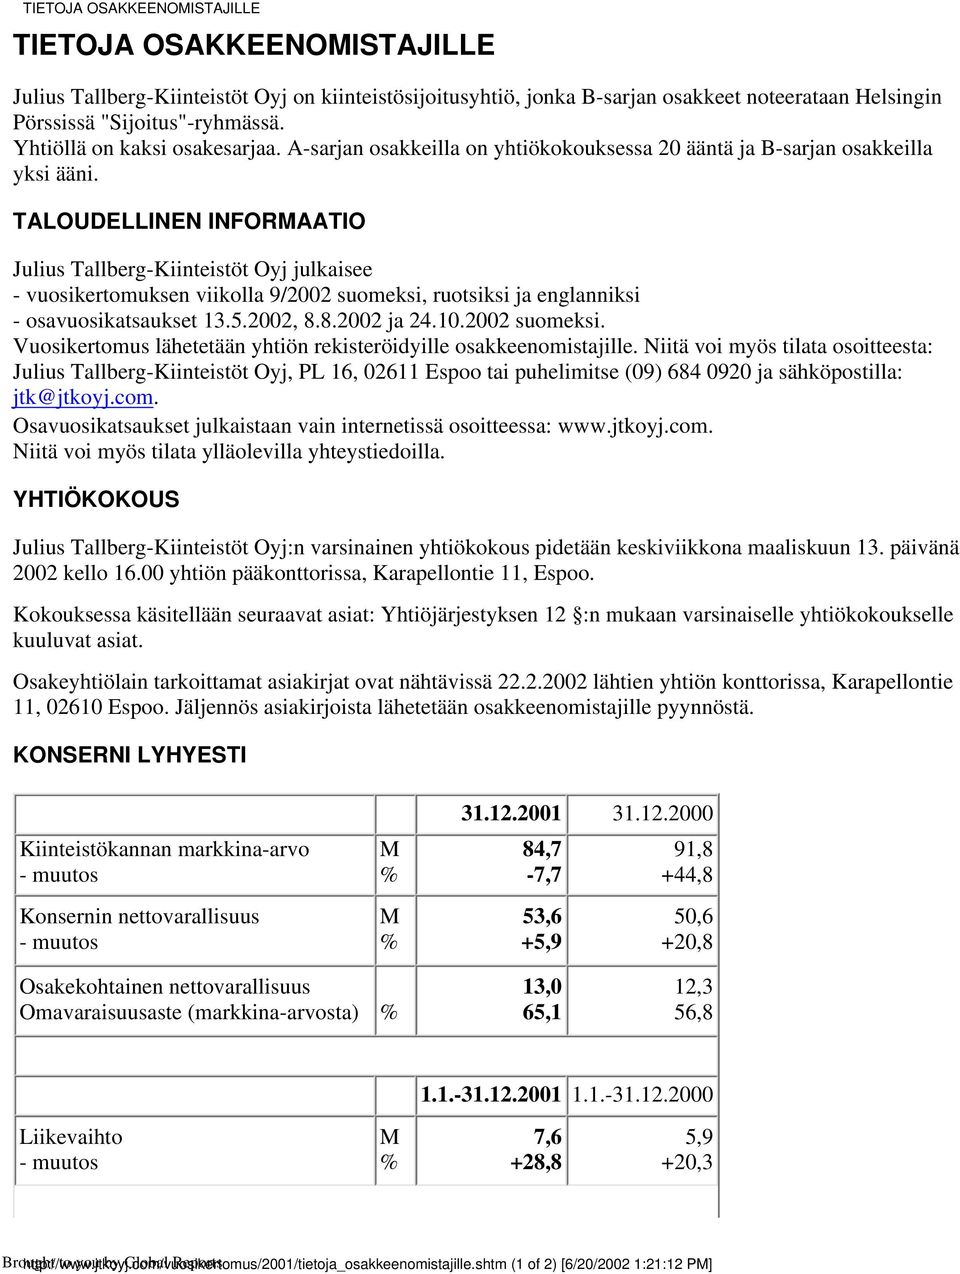 TALOUDELLINEN INFORMAATIO julkaisee - vuosikertomuksen viikolla 9/2002 suomeksi, ruotsiksi ja englanniksi - osavuosikatsaukset 13.5.2002, 8.8.2002 ja 24.10.2002 suomeksi. Vuosikertomus lähetetään yhtiön rekisteröidyille osakkeenomistajille.